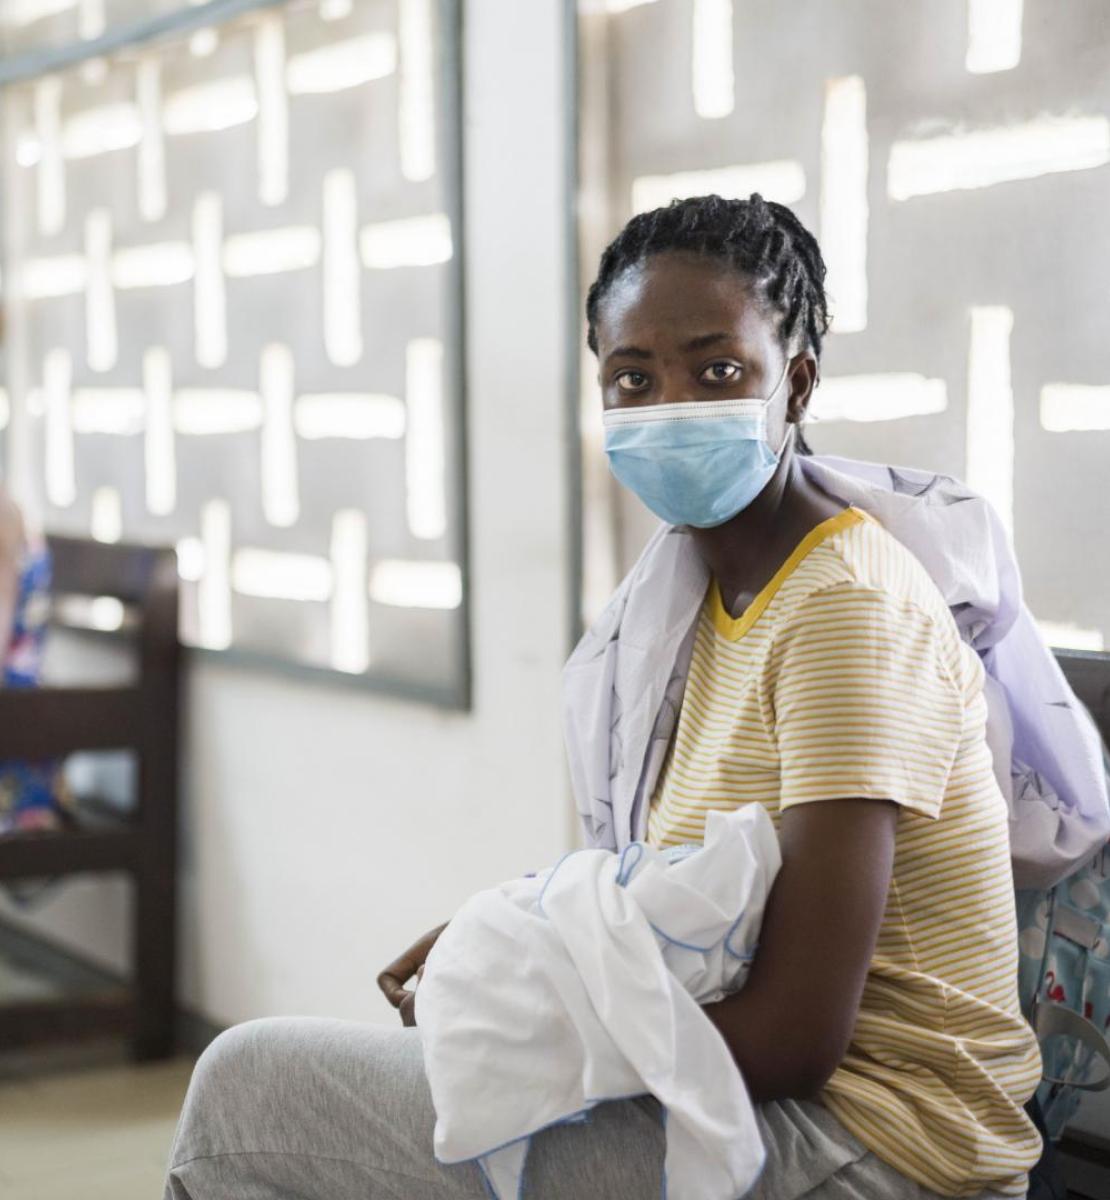 Una mujer con mascarilla de protección respiratoria y con su bebé en brazos se sienta en una sala de espera médica con otras mujeres.